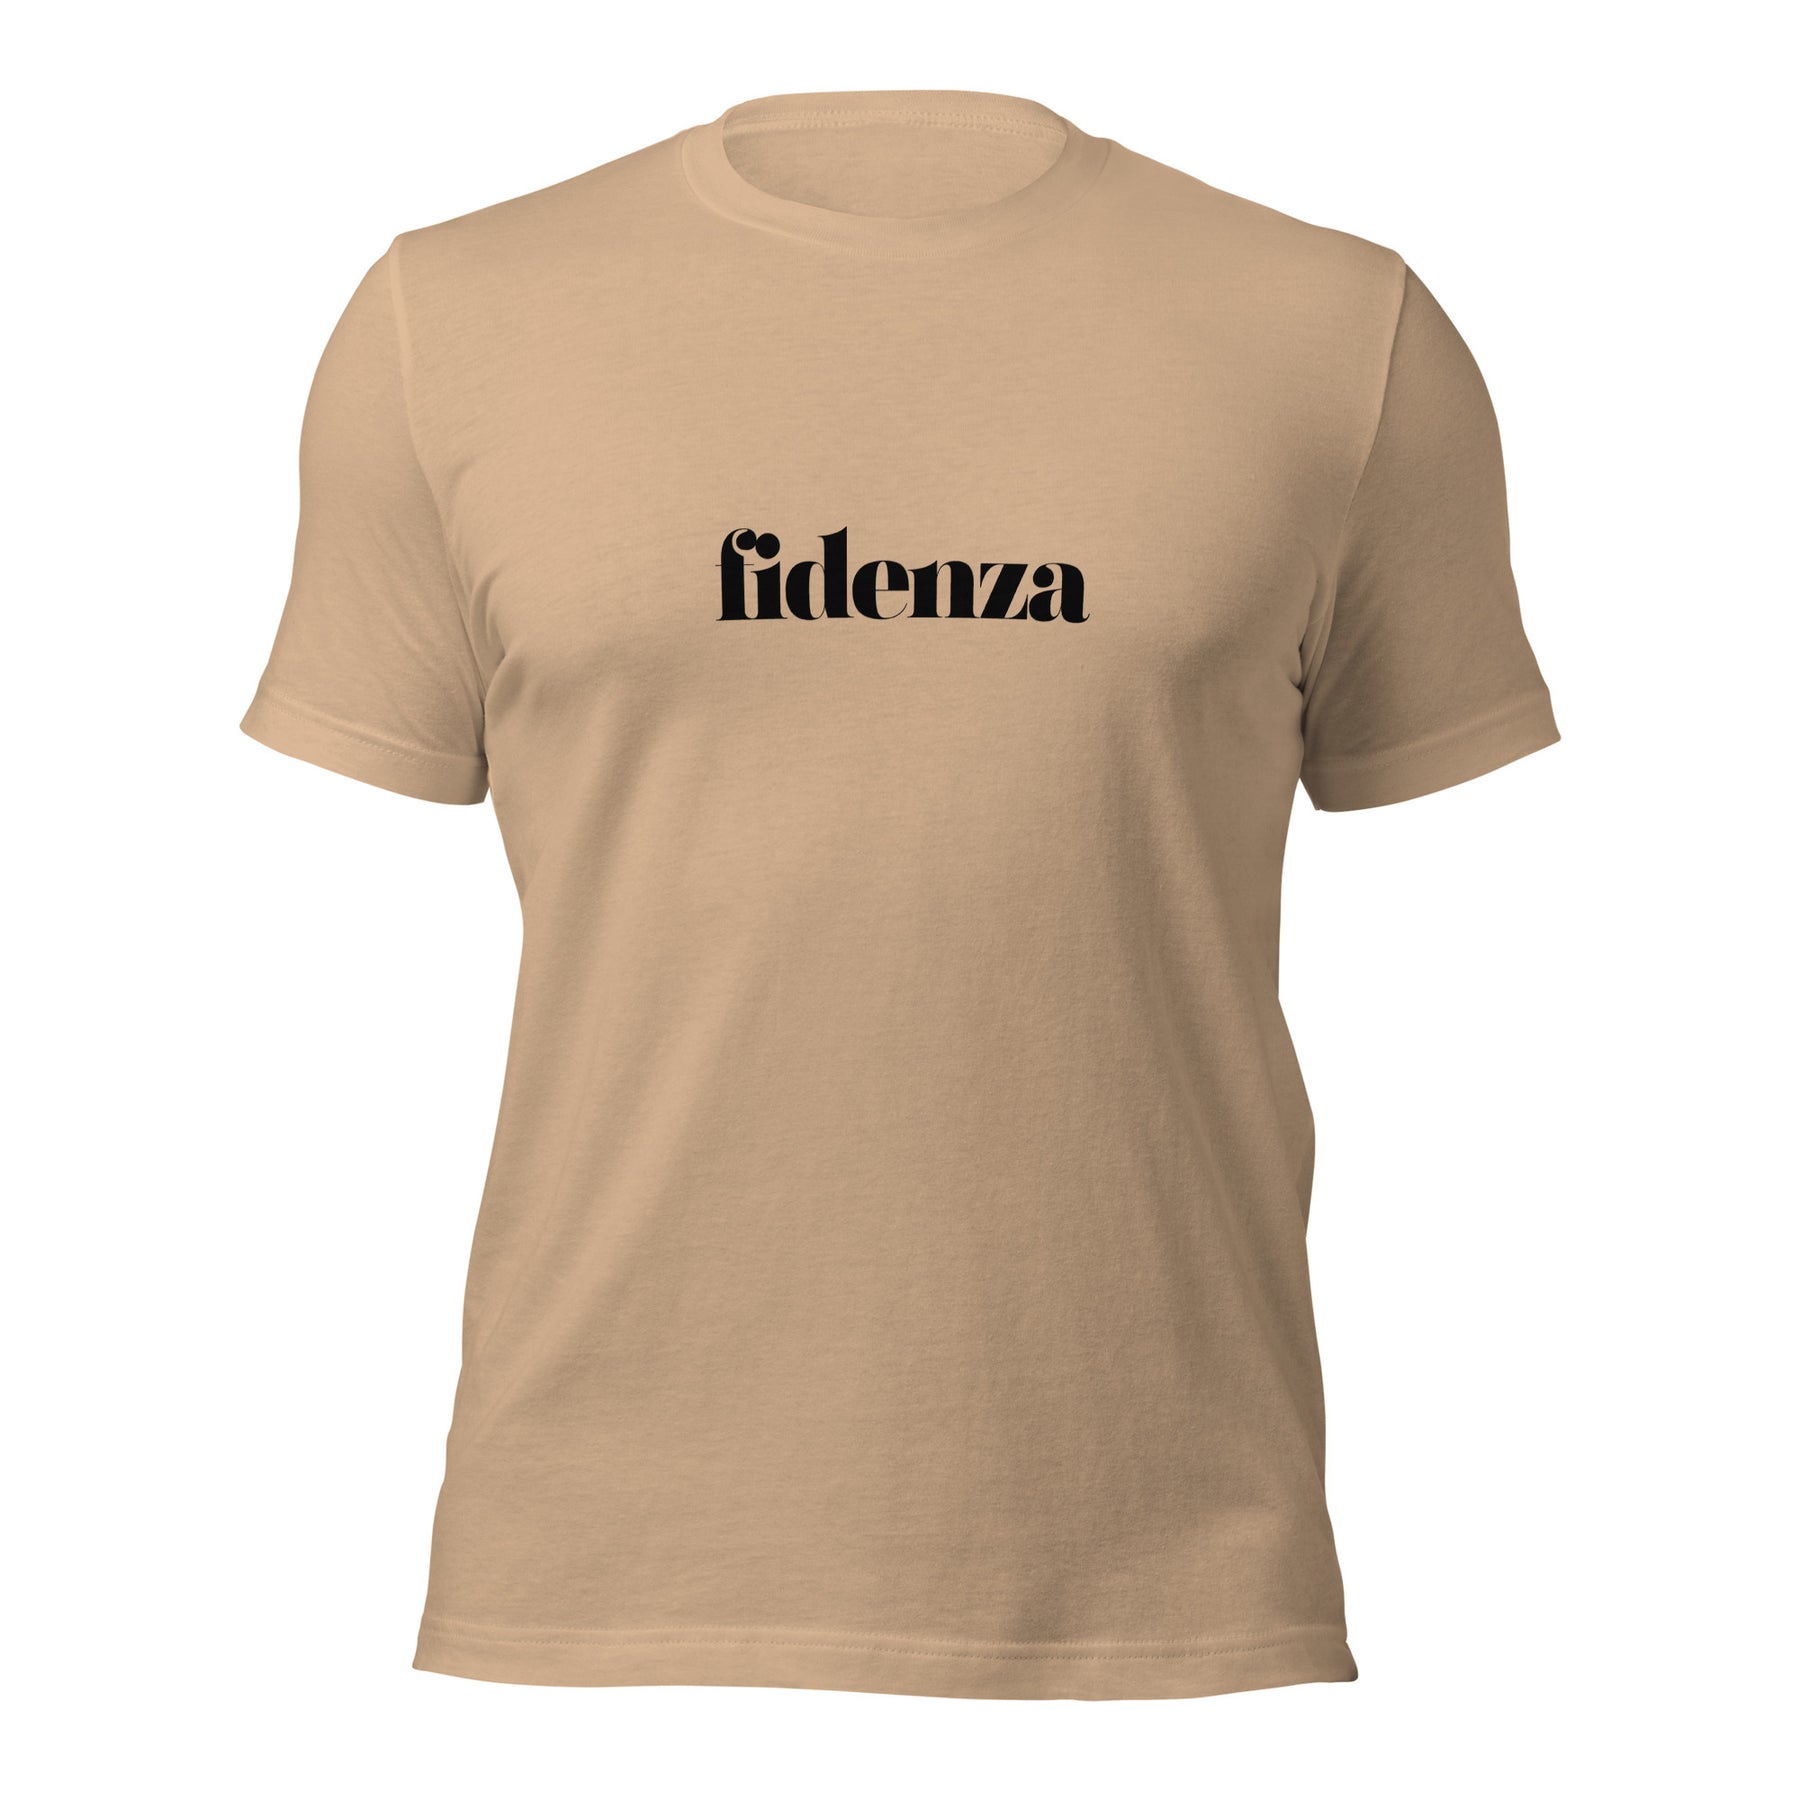 Fidenza | Unisex t-shirt